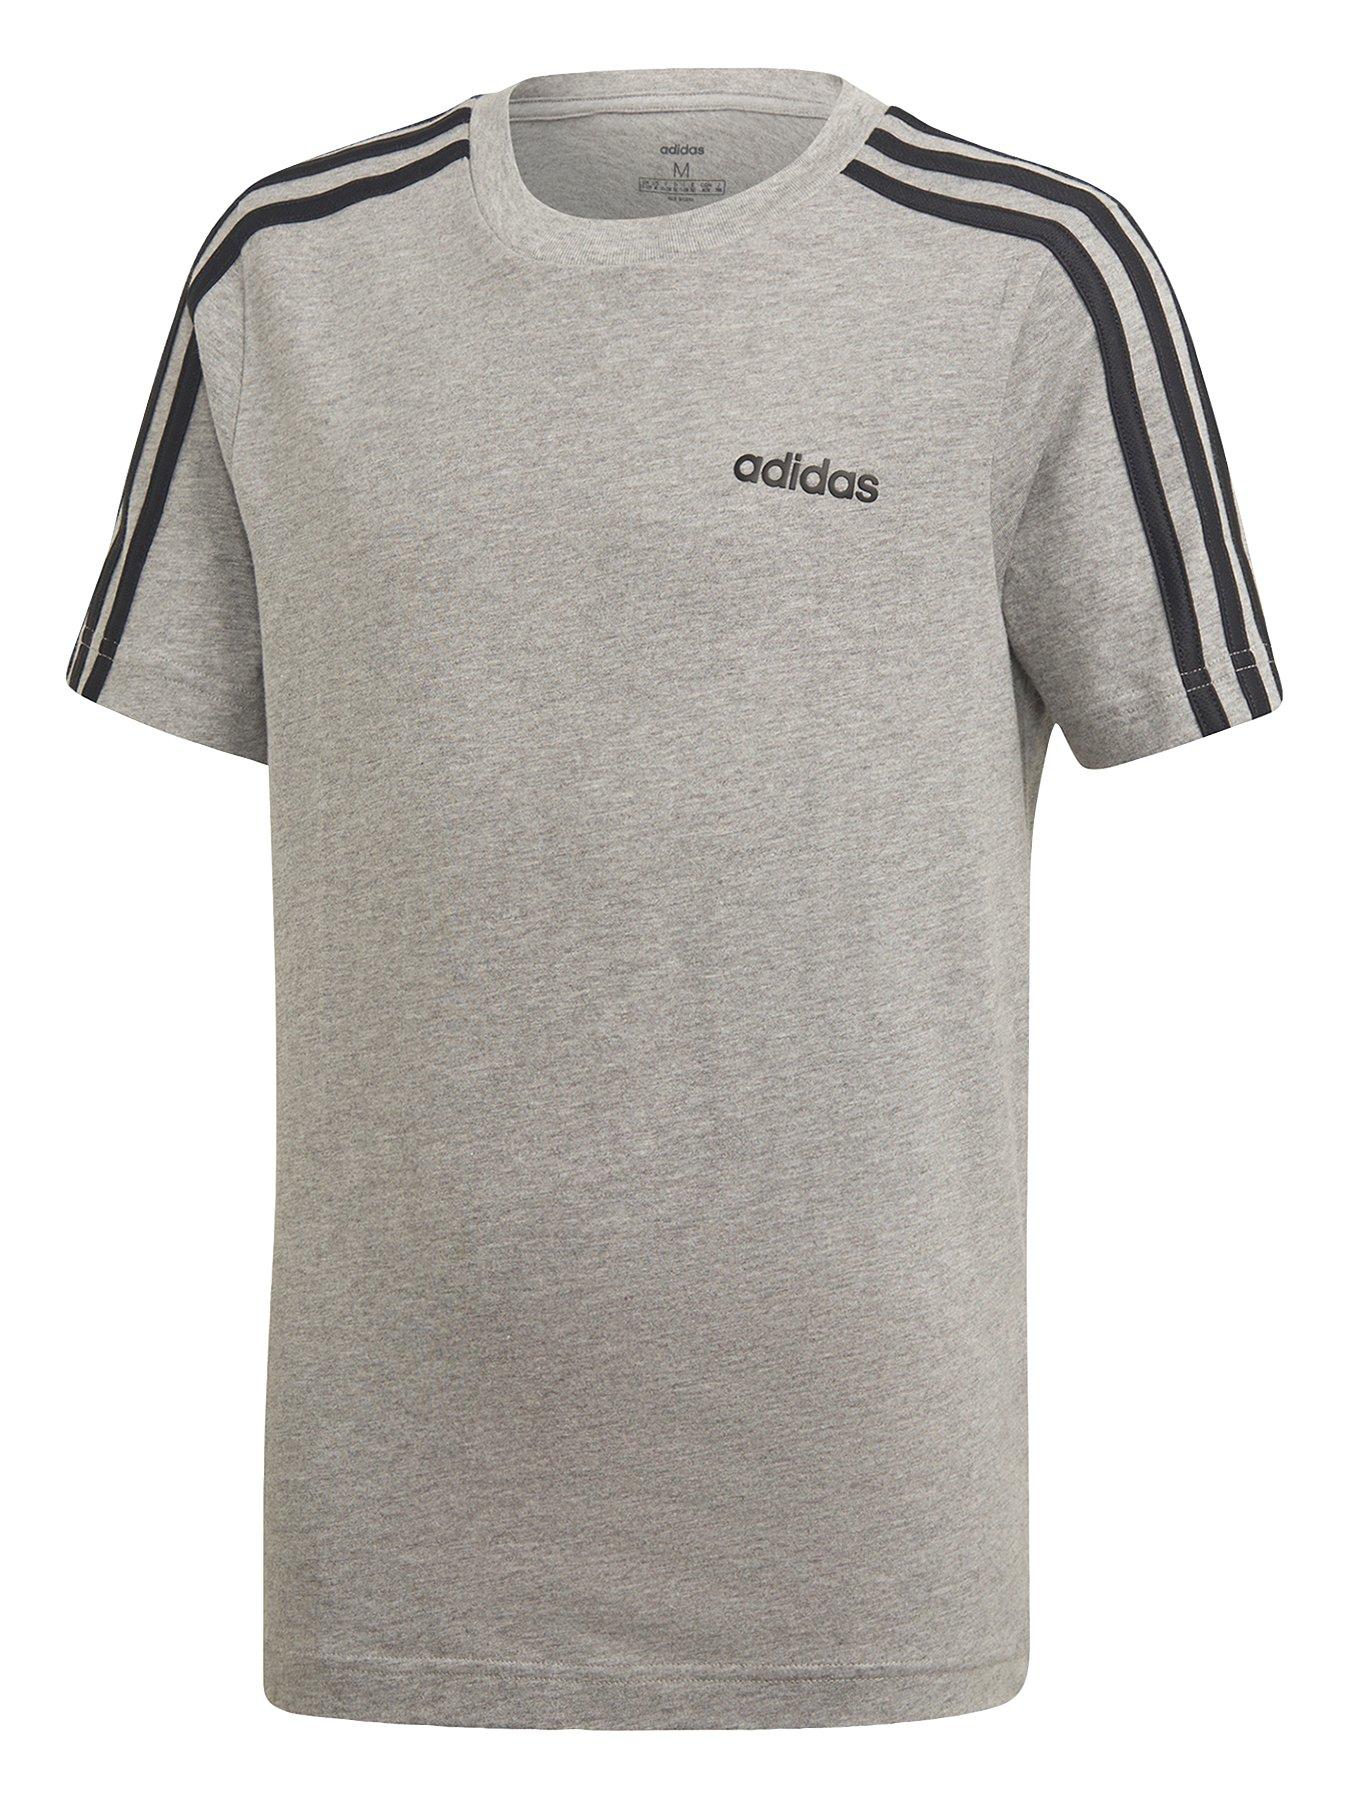 adidas 3 stripe t shirt grey